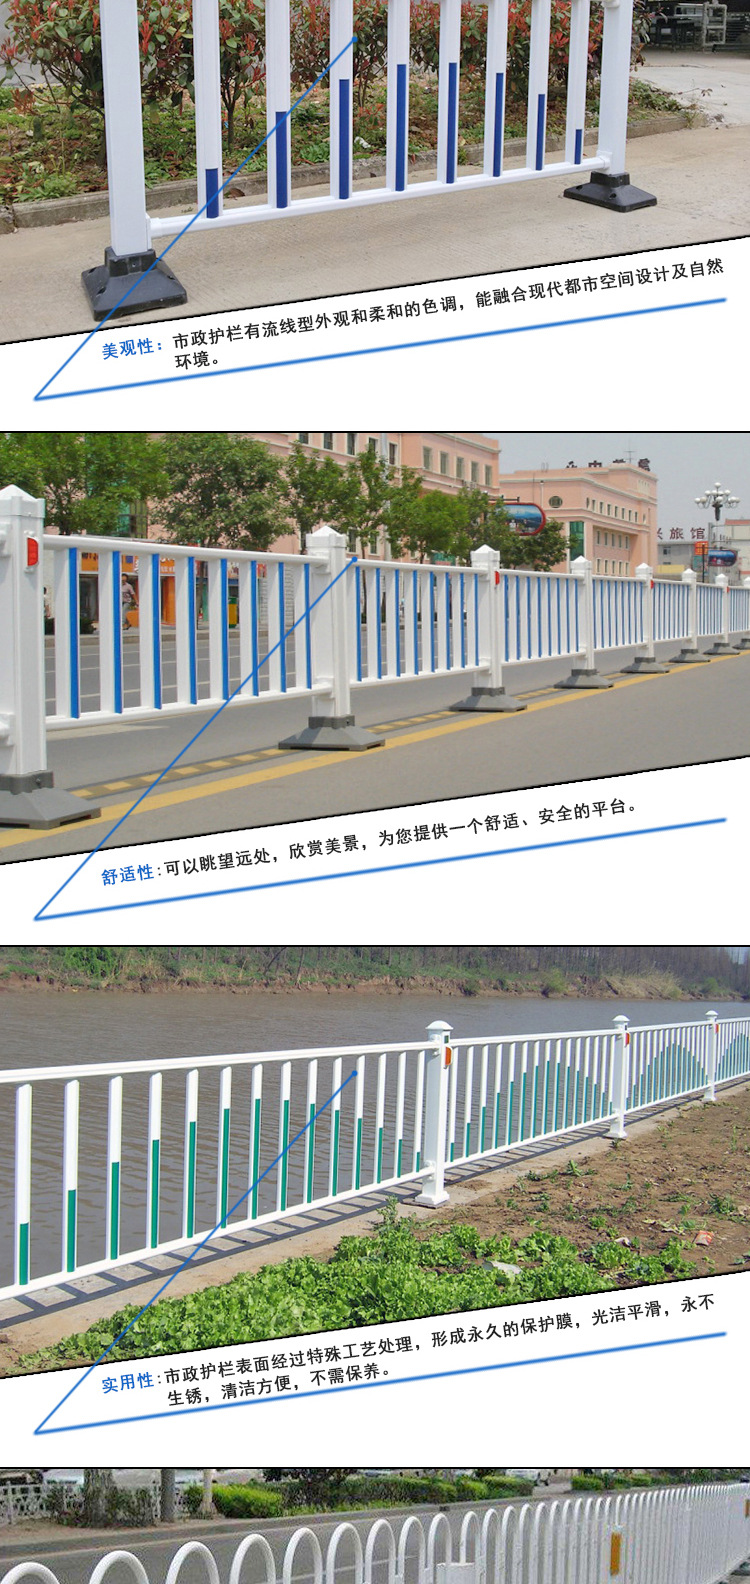 生产销售 市政护栏  道路交通隔离塑钢市政护栏  市政锌钢护栏示例图2